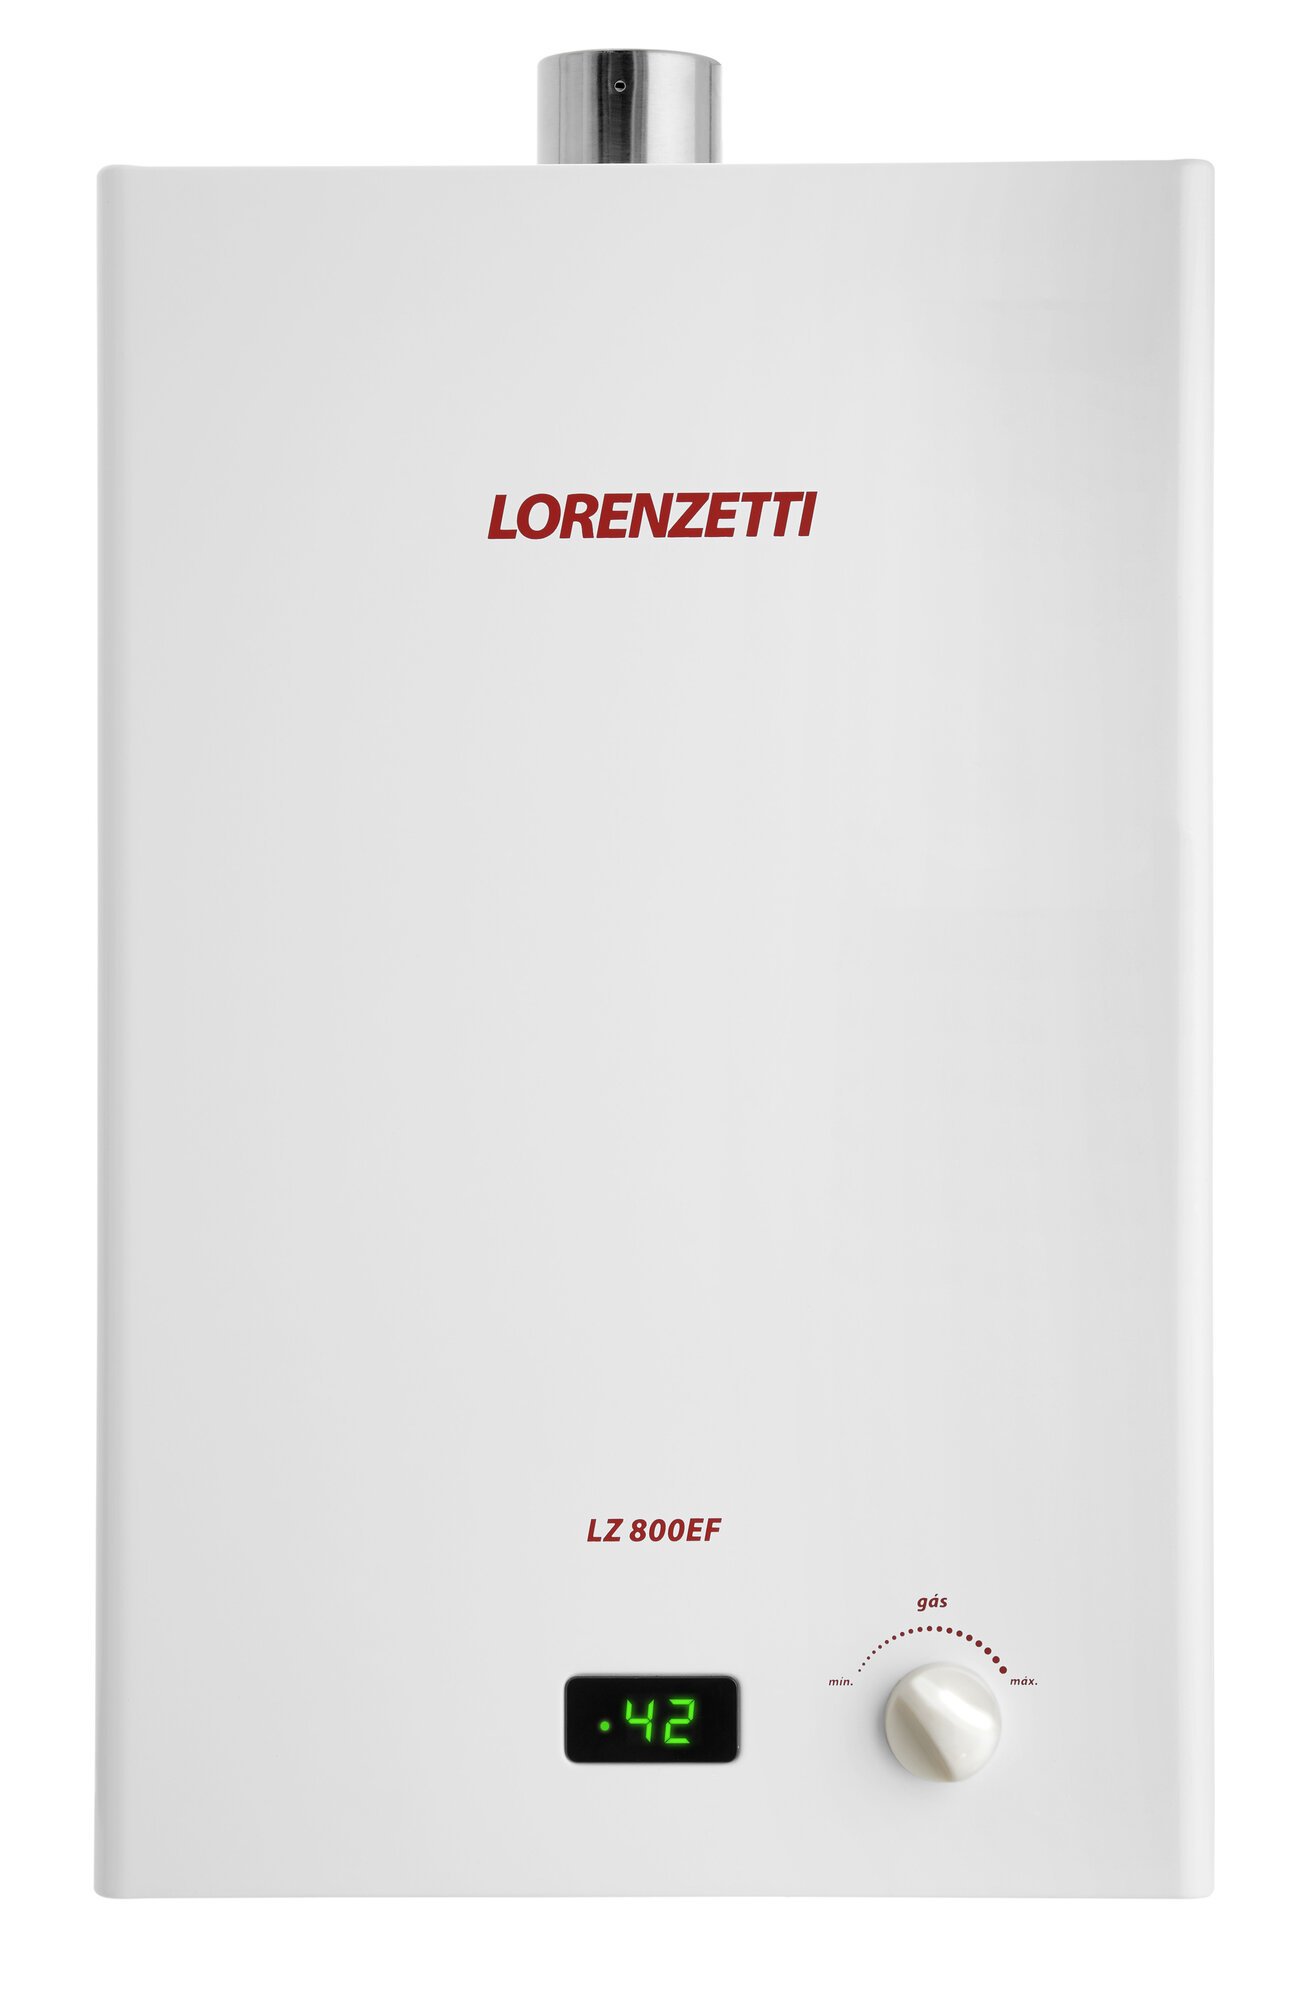 Aquecedor de Água Lorenzetti LZ 800EF Modelo Novo Vazão 8 Litros Exaustão Forçada - Gás